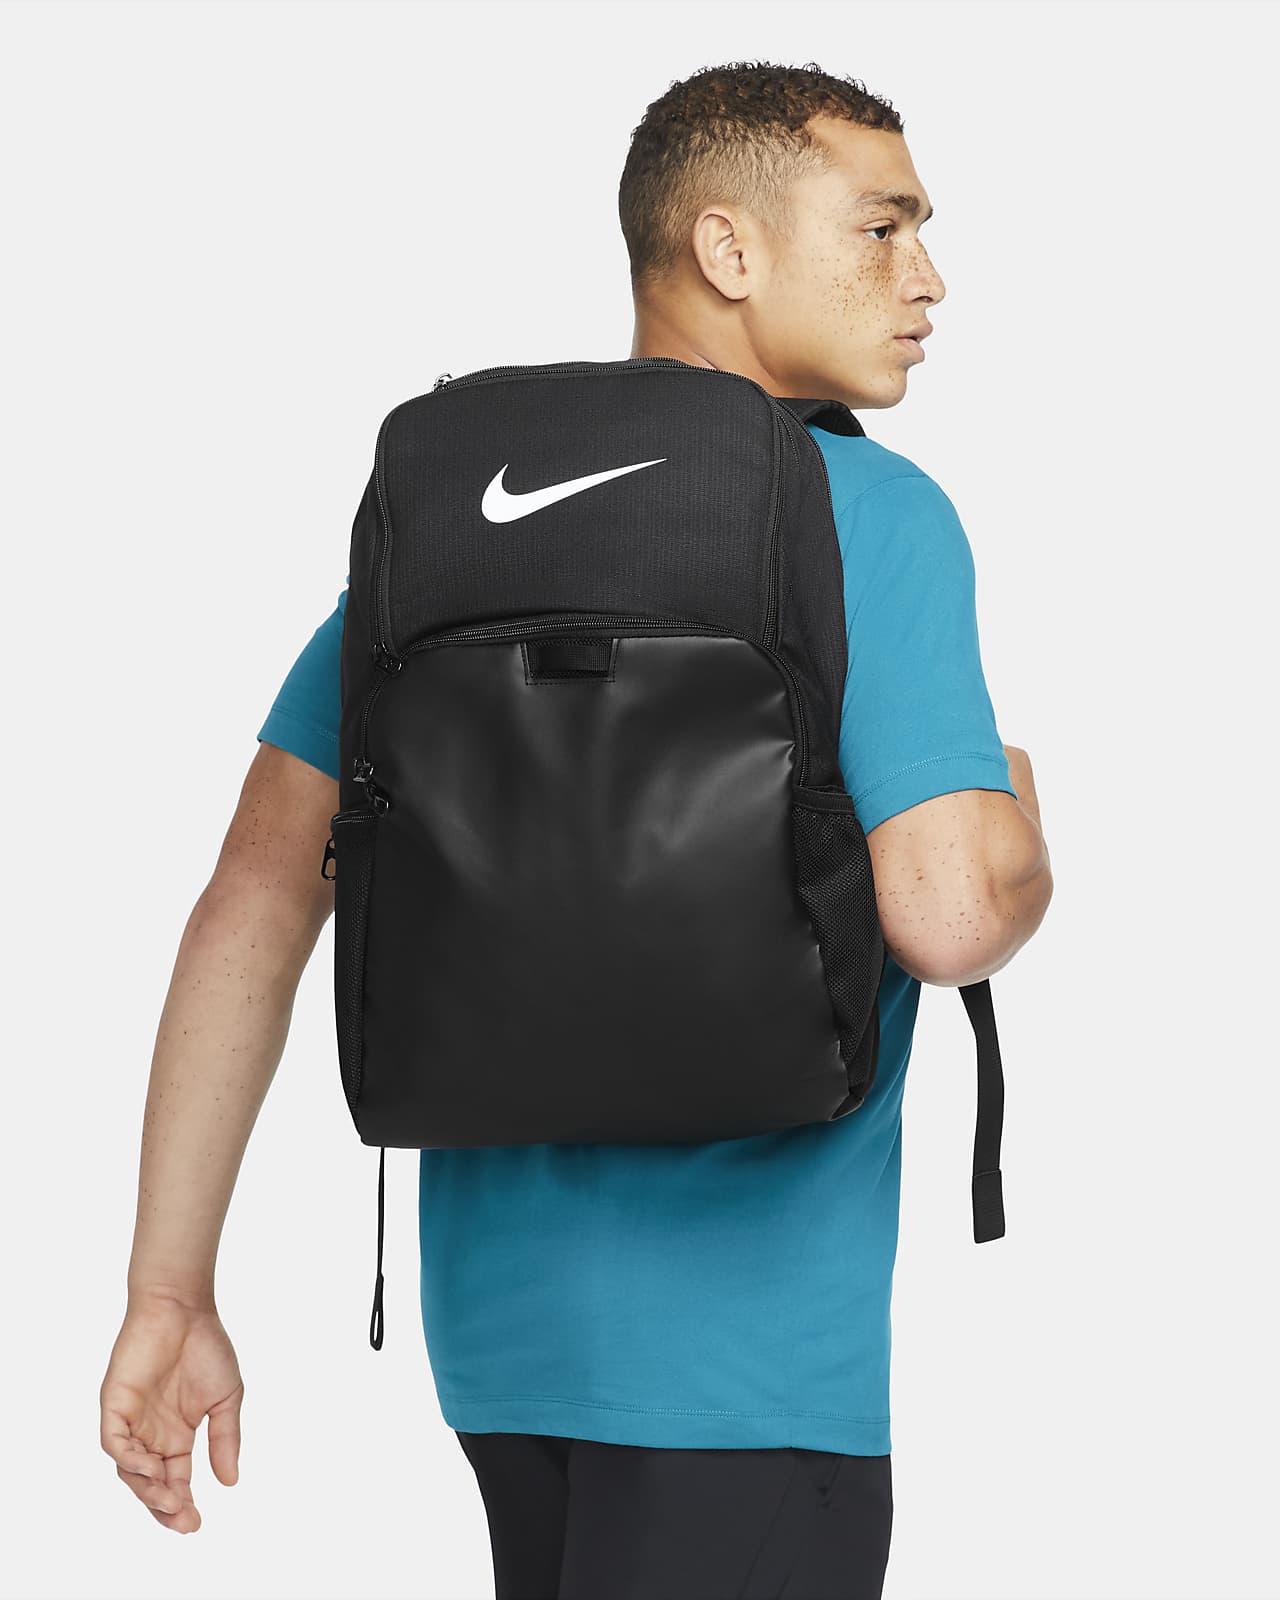 Nike Brasilia 9.5 Training Backpack 